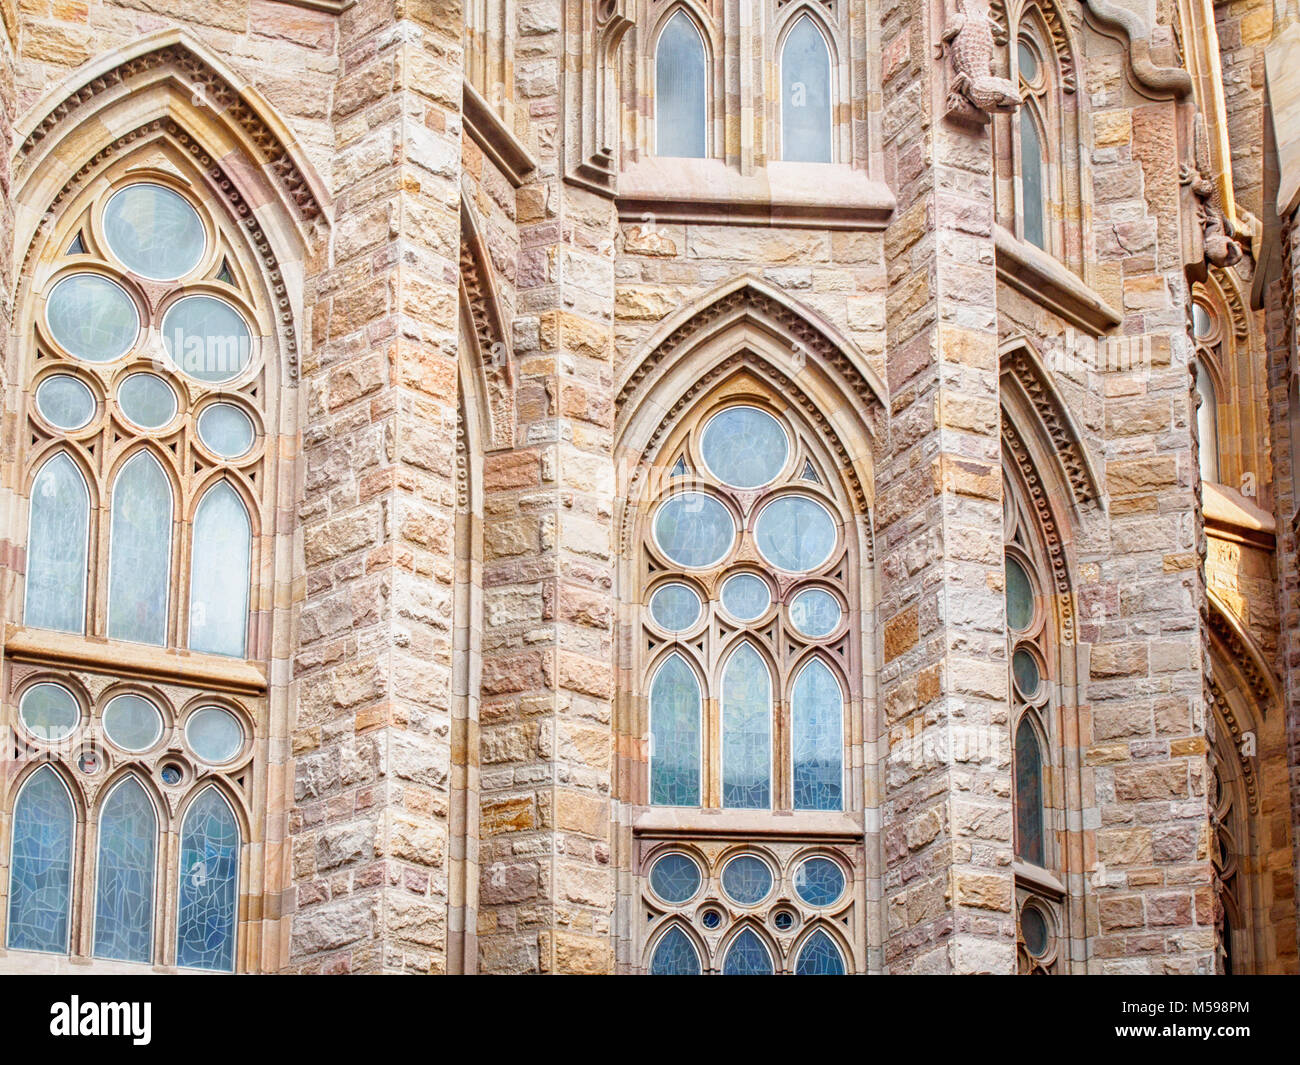 Barcellona, Spagna-febbraio 16, 2018: frammenti architettonici della Sagrada Familia - cattedrale progettata da Gaudi Foto Stock